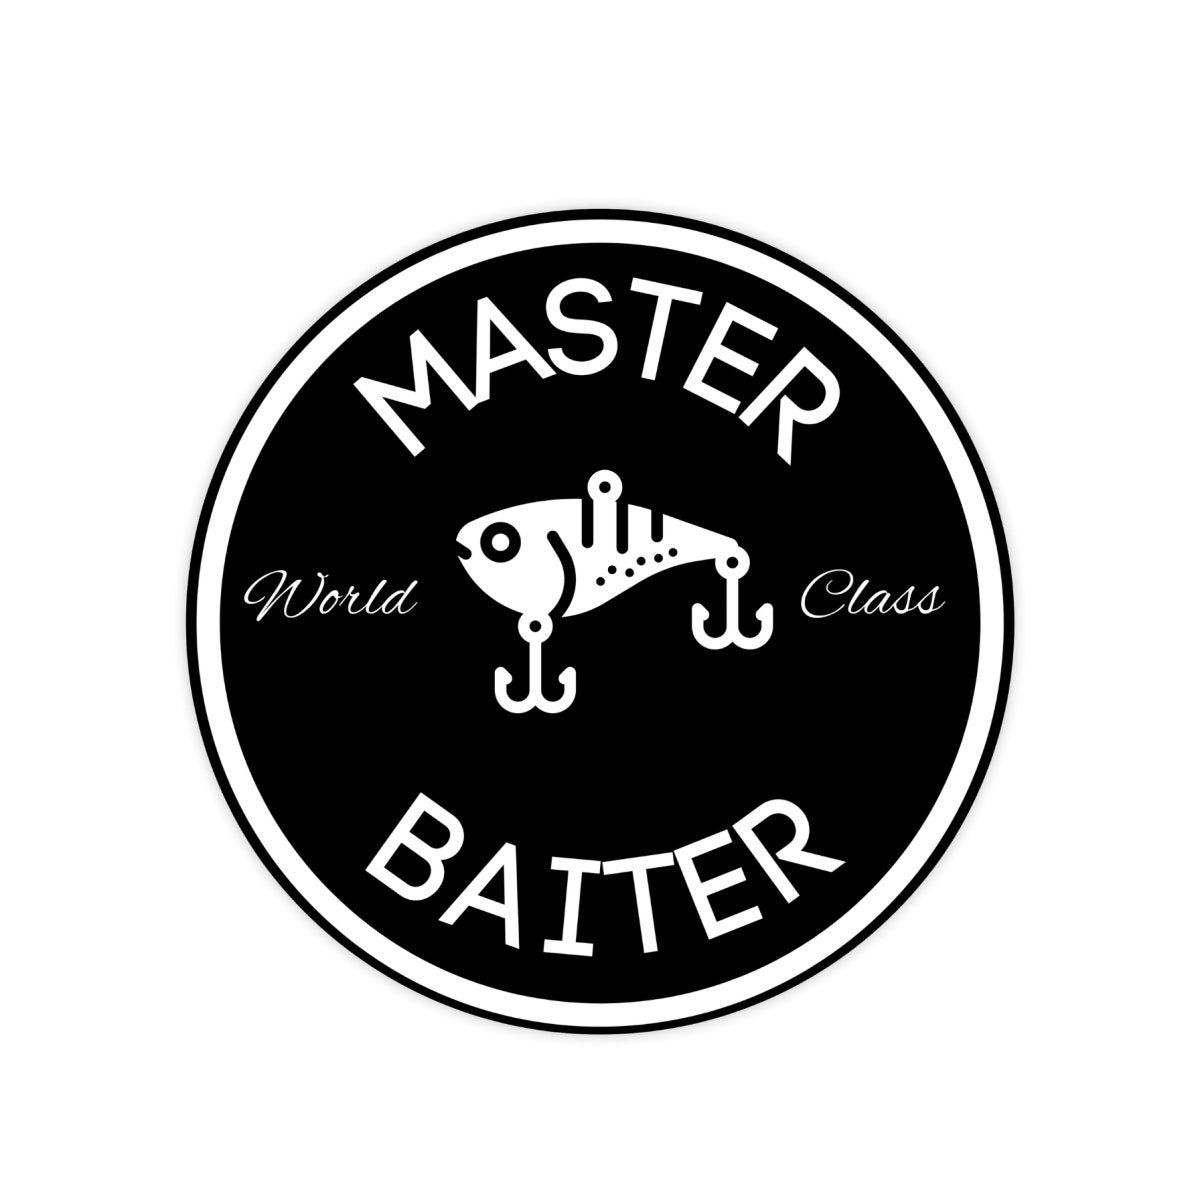 World Class Master Baiter Funny Meme Sticker - stickerbullWorld Class Master Baiter Funny Meme StickerRetail StickerstickerbullstickerbullMBB_#5Black & WhiteWorld Class Master Baiter Funny Meme Sticker